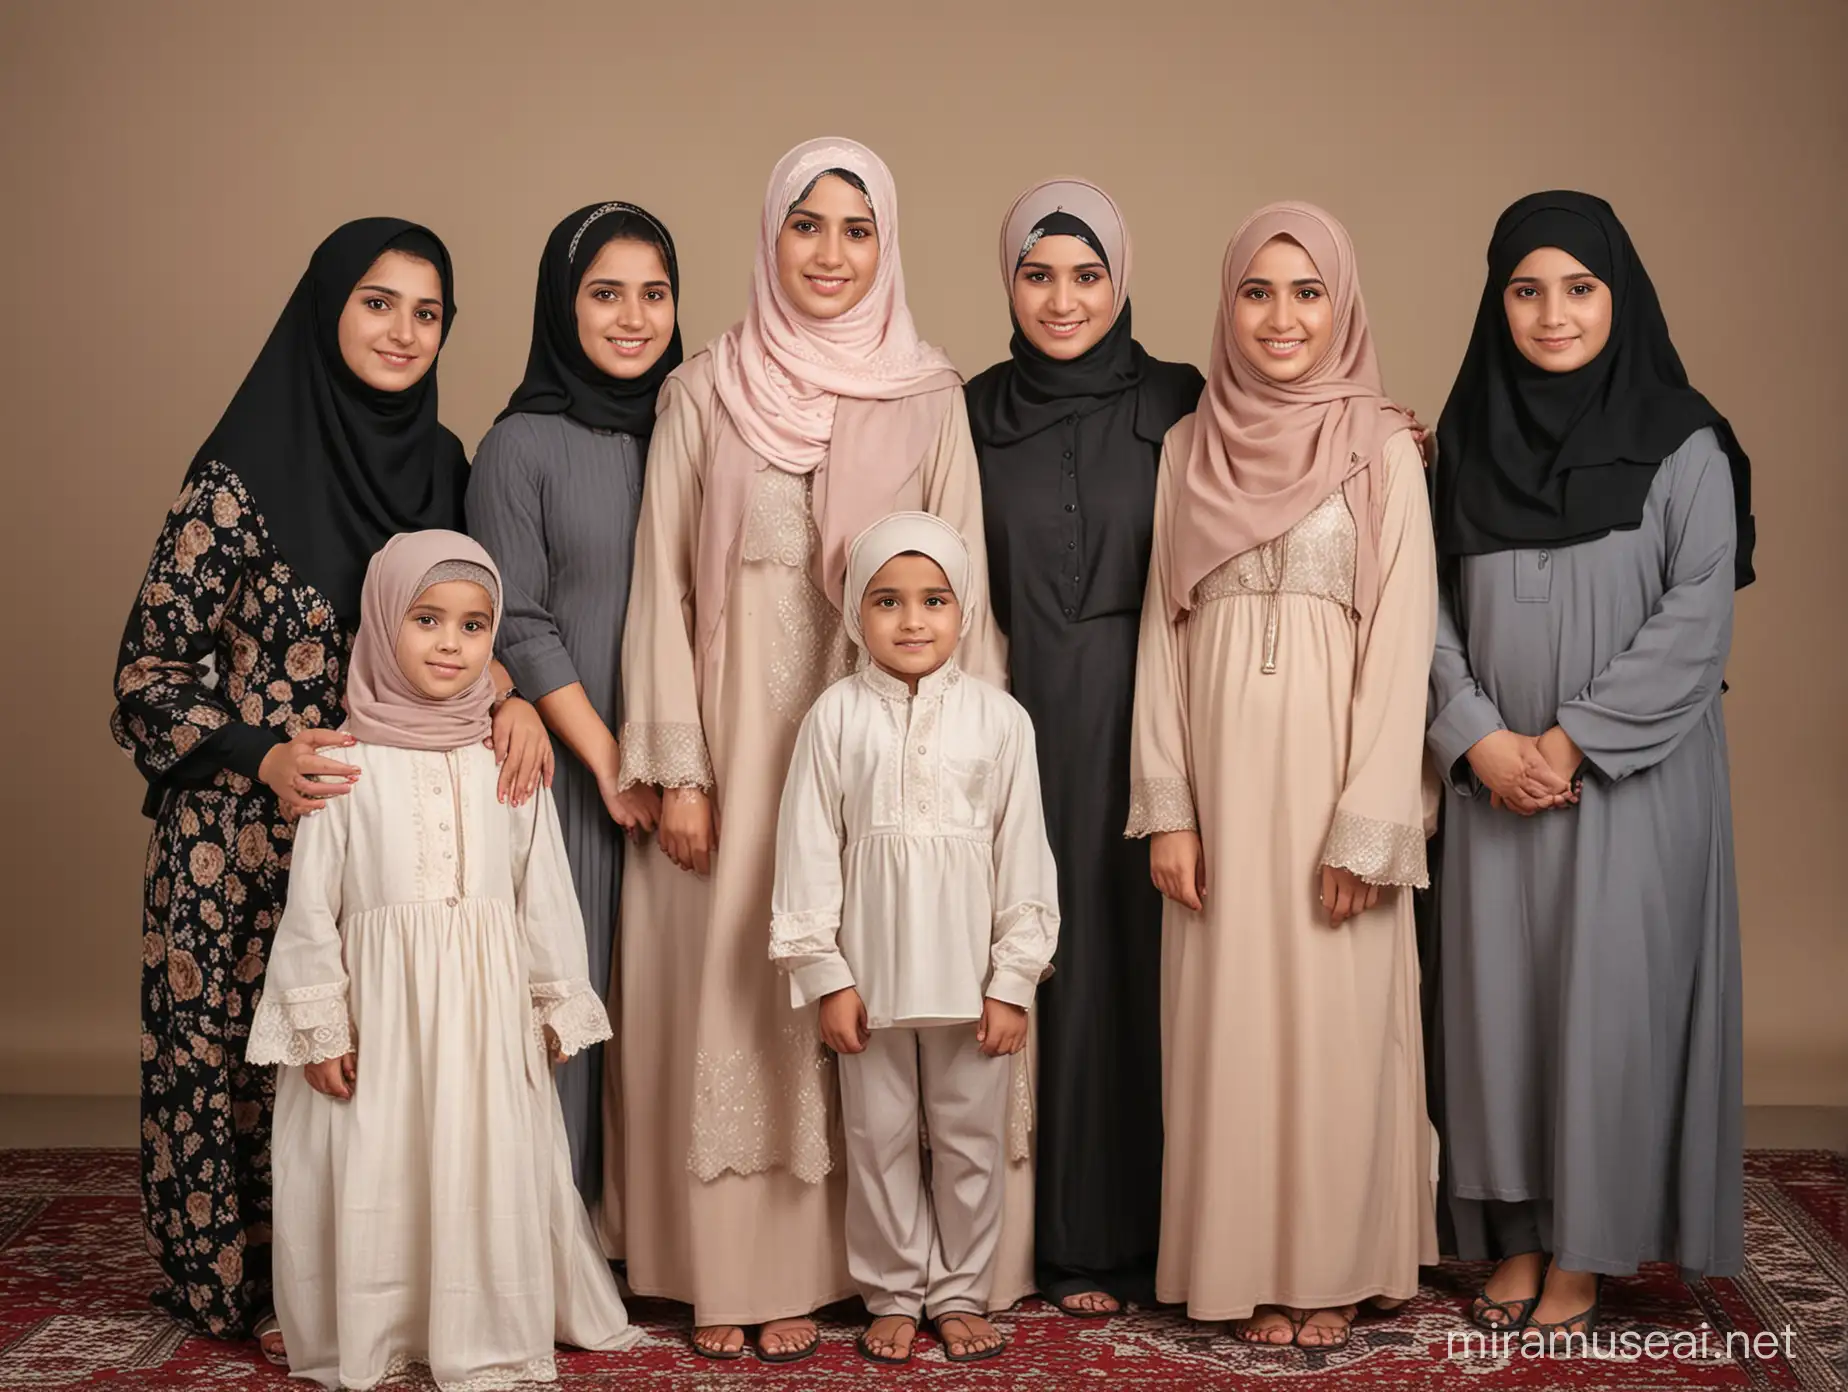  با سه برادر جوانو دو خواهر نوجوانو خواهر ها با حجاب و در کنار پدر و مادر عکس در کنار خانواده 